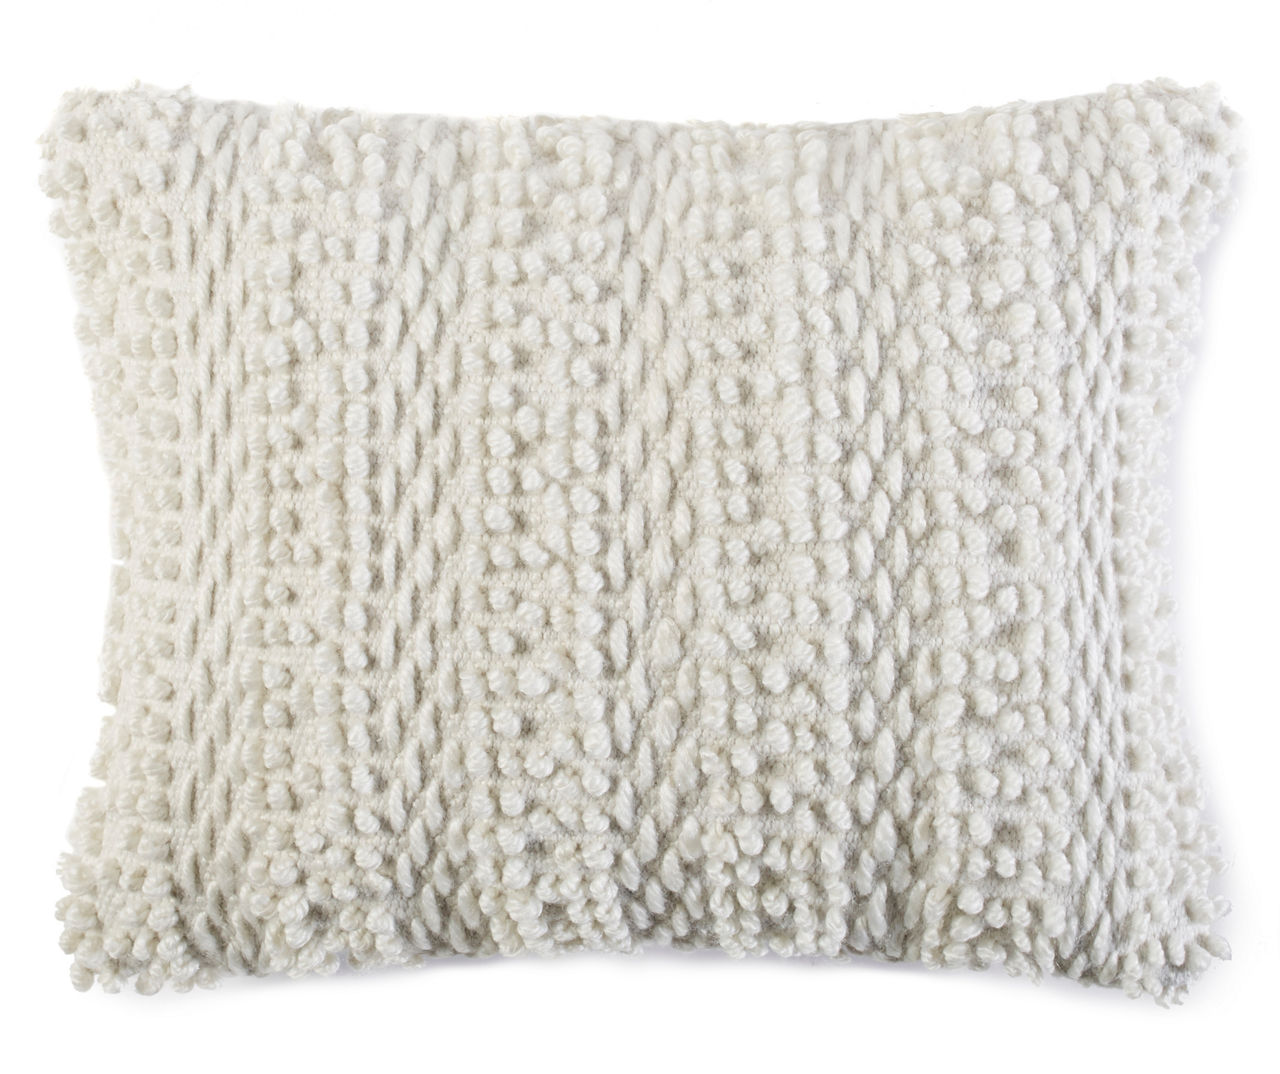 Ivory - White Textured throw pillows